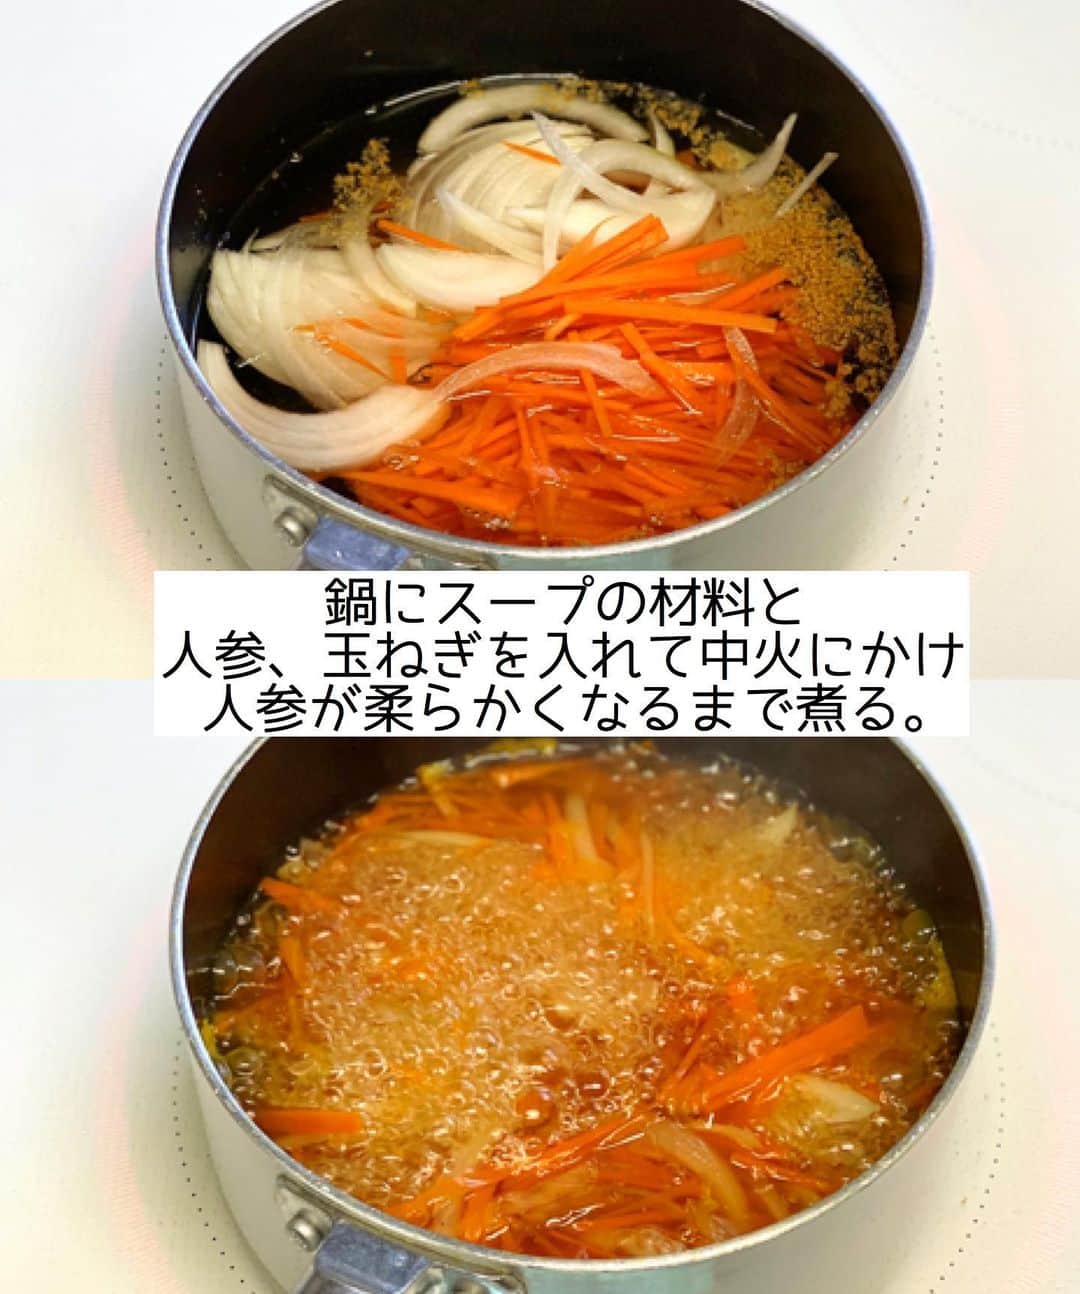 Mizuki【料理ブロガー・簡単レシピ】さんのインスタグラム写真 - (Mizuki【料理ブロガー・簡単レシピ】Instagram)「・﻿ 【#レシピ 】ーーーーーー﻿ ♡人参のとろ玉スープ♡﻿ ーーーーーーーーーーーー﻿ ﻿ ﻿ ﻿ おはようございます(*^^*)﻿ ﻿ 今日はあったかスープレシピ﻿ 人参のとろ玉スープのご紹介です♡﻿ 野菜の甘さが引き立つ優しいお味で﻿ 朝食やあと一品におすすめですよ〜♩﻿ 少し前にアップしている﻿ #ひき肉とニラのとろ玉スープm と共に﻿ うちの定番おかずスープです(*´艸`)﻿ ﻿ 野菜が無理なく食べられるので﻿ よかったらお試し下さいね(*^^*)﻿ ﻿ ﻿ ﻿ ＿＿＿＿＿＿＿＿＿＿＿＿＿＿＿＿＿＿＿＿﻿ 【2人分】﻿ 人参...1/2本﻿ 玉ねぎ...1/4個﻿ 卵...1個﻿ 片栗粉...小2﻿ ●水...400ml﻿ ●コンソメ...大1/2﻿ ●醤油...小1﻿ ●こしょう...少々﻿ (あれば)パセリ...適量﻿ ﻿ 1.人参は千切りにする。玉ねぎは薄切りにする。卵は溶きほぐす。片栗粉は水大1(分量外)で溶いて水溶き片栗粉を作る。﻿ 2.鍋に●、人参、玉ねぎを入れて中火にかけ、人参が柔らかくなるまで煮る。﻿ 3.水溶き片栗粉を加えてとろみを付け、溶き卵を流し入れ、ふんわりしたら火を止める。仕上げにパセリを振る。﻿ ￣￣￣￣￣￣￣￣￣￣￣￣￣￣￣￣￣￣￣￣﻿ ﻿ ﻿ ﻿ 《ポイント》﻿ ♦︎人参1/2本80g使用しました♩﻿ ♦︎人参は3分くらい煮ると柔らかくなります♩﻿ ♦︎水溶き片栗粉を加えたら手早く混ぜて下さい♩﻿ ﻿ ﻿ ﻿ ﻿ ﻿ ﻿ ⭐️発売中⭐️3刷重版が決まりました😭﻿ 本当にありがとうございます(涙)﻿ _____________________________________﻿ \15分でいただきます/﻿ 📕#Mizukiの2品献立 📕﻿ (9月24日発売・マガジンハウス)﻿ ￣￣￣￣￣￣￣￣￣￣￣￣￣￣￣￣￣﻿ ﻿ 忙しい私たちには﻿ 2品くらいがちょうどいい！﻿ 『しんどくない献立、考えました』﻿ ￣￣￣￣￣￣￣￣￣￣￣￣￣￣￣￣﻿ ﻿ ーーーーーPART.1 ーーーーー﻿ 【Mizukiのお墨つき！２品献立ベスト10】﻿ 約15分でできる10献立をご紹介！﻿ メインは全部フライパン、副菜はレンチンor混ぜるだけ♡﻿ ﻿ ーーーーーPART.2 ーーーーー﻿ 【フライパンひとつ！今夜のメインおかず】﻿ 献立の主役になる肉や魚のおかず50品！﻿ Part3の副菜と組み合わせれば﻿ 献立のバリエーションが広がりますよ♩﻿ ﻿ ーーーーー PART.3 ーーーーー﻿ 【合間に作れる！ 野菜別かんたん副菜】﻿ レンチンor和えるだけの副菜レシピを﻿ 素材別にたっぷり収録♩﻿ ﻿ ーーーーー番外編ーーーーー﻿ 【ひとつで満足！ご飯＆麺】﻿ 【具だくさん！おかずスープ】﻿ 【オーブンいらずのおやつレシピ】﻿ ￣￣￣￣￣￣￣￣￣￣￣￣￣￣￣￣￣￣﻿ (ハイライトにリンク🔗あります💗)﻿ ﻿ ﻿ ﻿ ﻿ ＿＿＿＿＿＿＿＿＿＿＿＿＿＿＿＿＿＿﻿ レシピを作って下さった際や﻿ レシピ本についてのご投稿には﻿ タグ付け( @mizuki_31cafe )して﻿ お知らせいただけると嬉しいです😊💕﻿ ￣￣￣￣￣￣￣￣￣￣￣￣￣￣￣￣￣￣﻿ ﻿ ﻿ ﻿ ﻿ #人参#卵#スープ#Mizuki#簡単レシピ#時短レシピ#節約レシピ#料理#フーディーテーブル#マカロニメイト#おうちごはん#デリスタグラマー#料理好きな人と繋がりたい#食べ物#料理記録#おうちごはんlover#写真好きな人と繋がりたい#foodpic#cooking#recipe#lin_stagrammer#foodporn#yummy#f52grams#人参のとろ玉スープm」10月27日 7時17分 - mizuki_31cafe